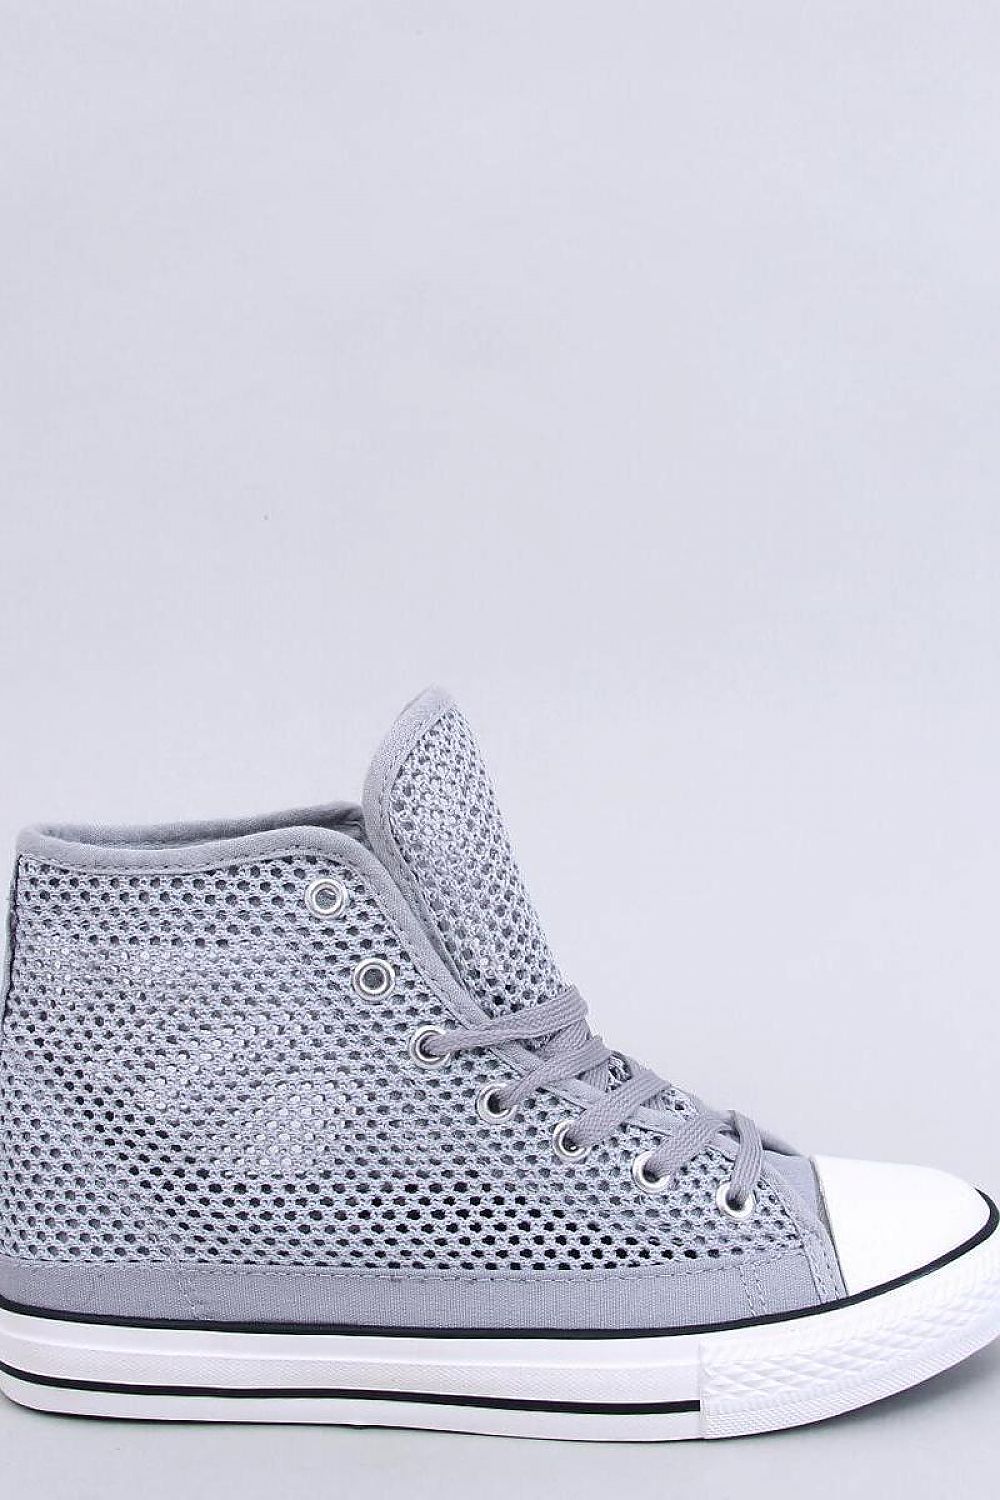 TEEK - Grey Mesh Sneakers SHOES TEEK MH 6  